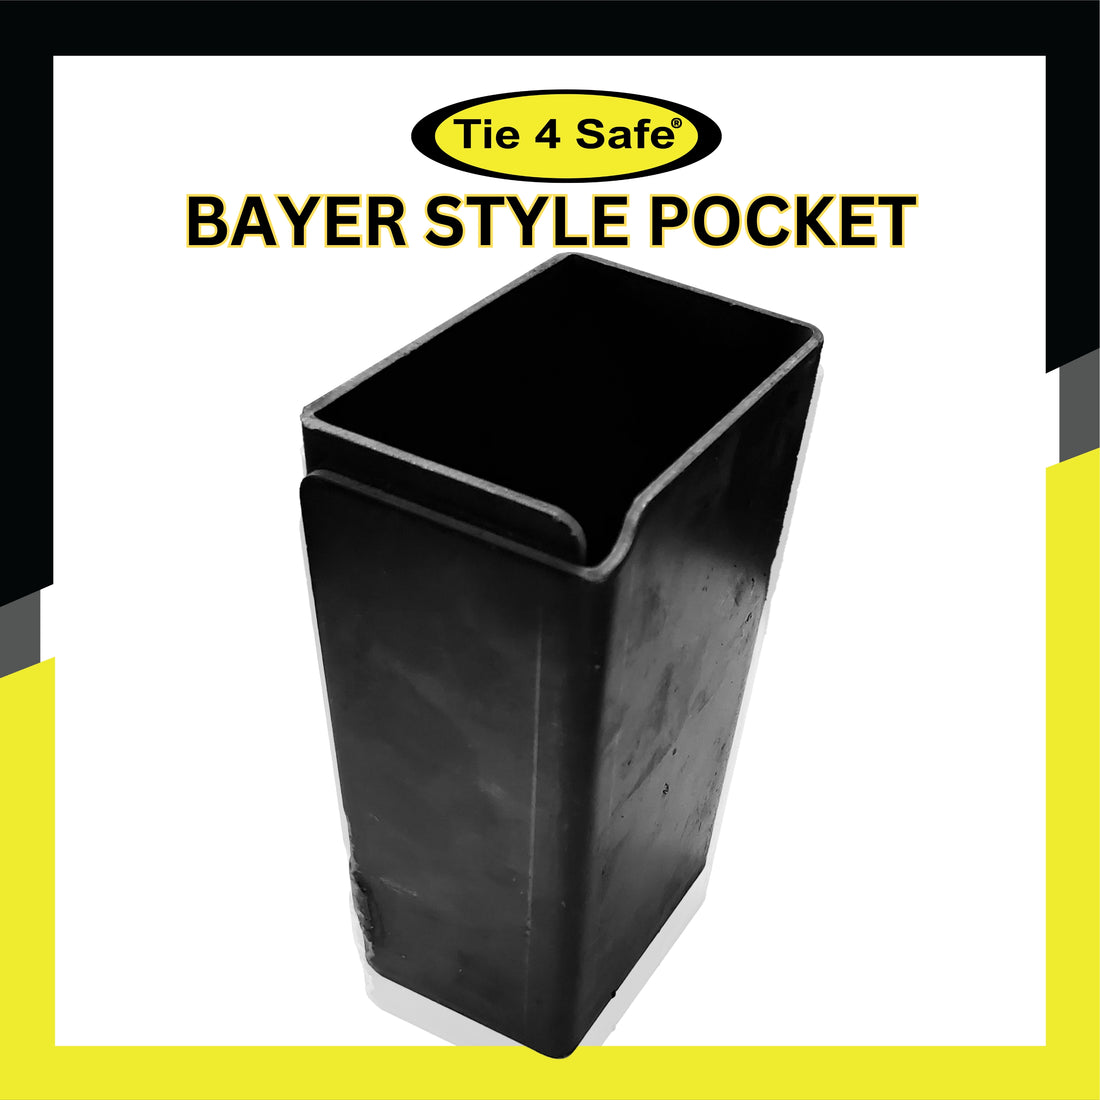 Fleming Pocket, Sleeve, and Bayer Pocket